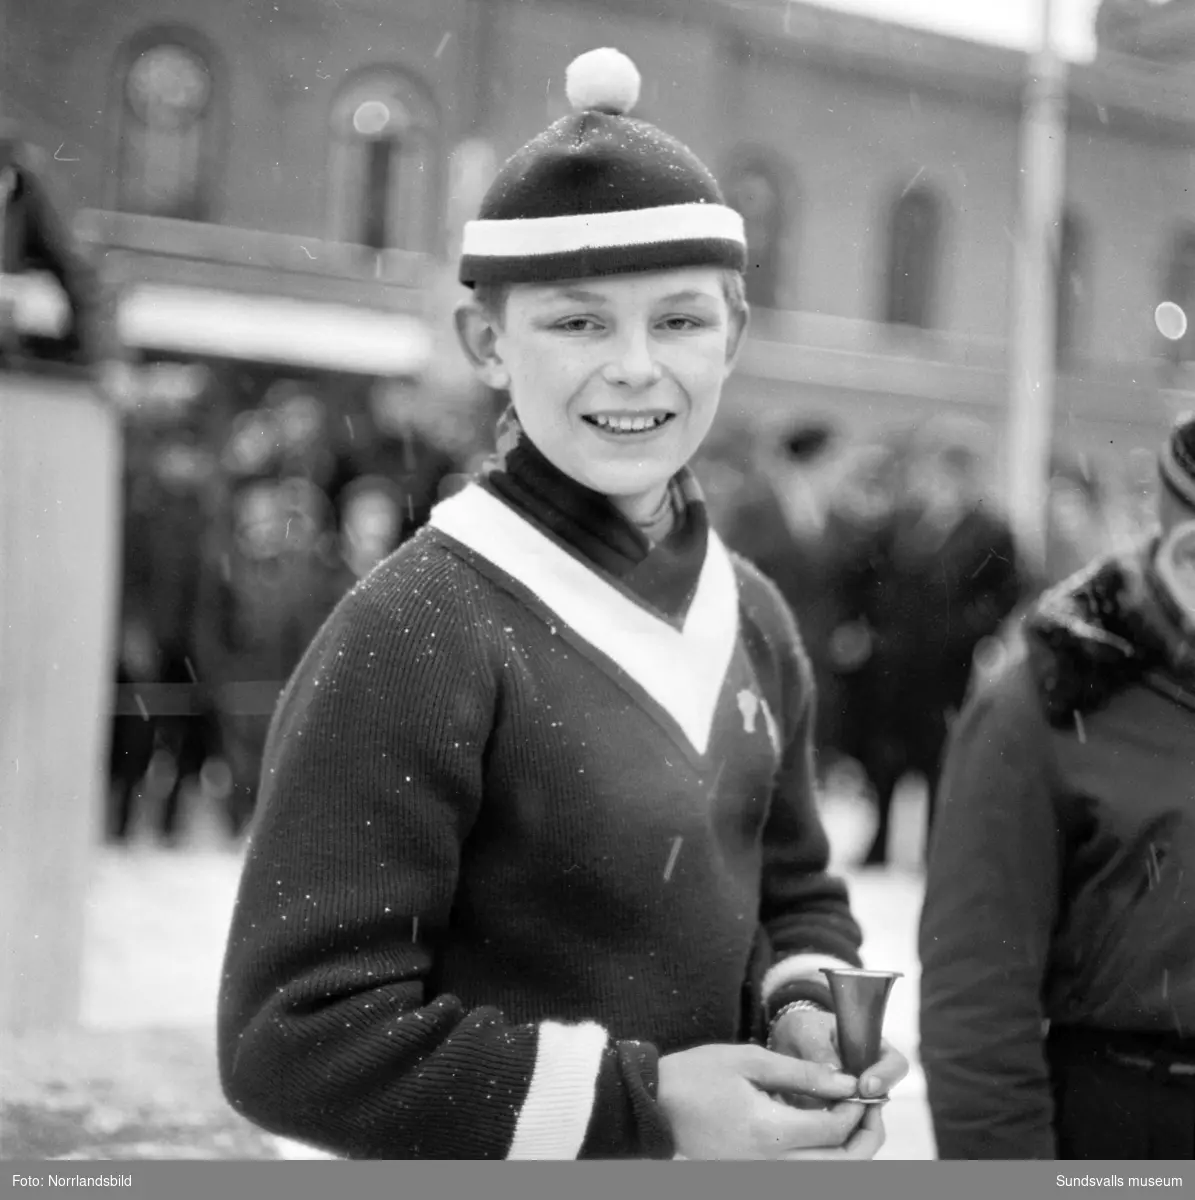 Ungdomens vinterspel i Sundsvall. Bilder från utförsåkning, längdåkning samt prisutdelning på Stora torget.